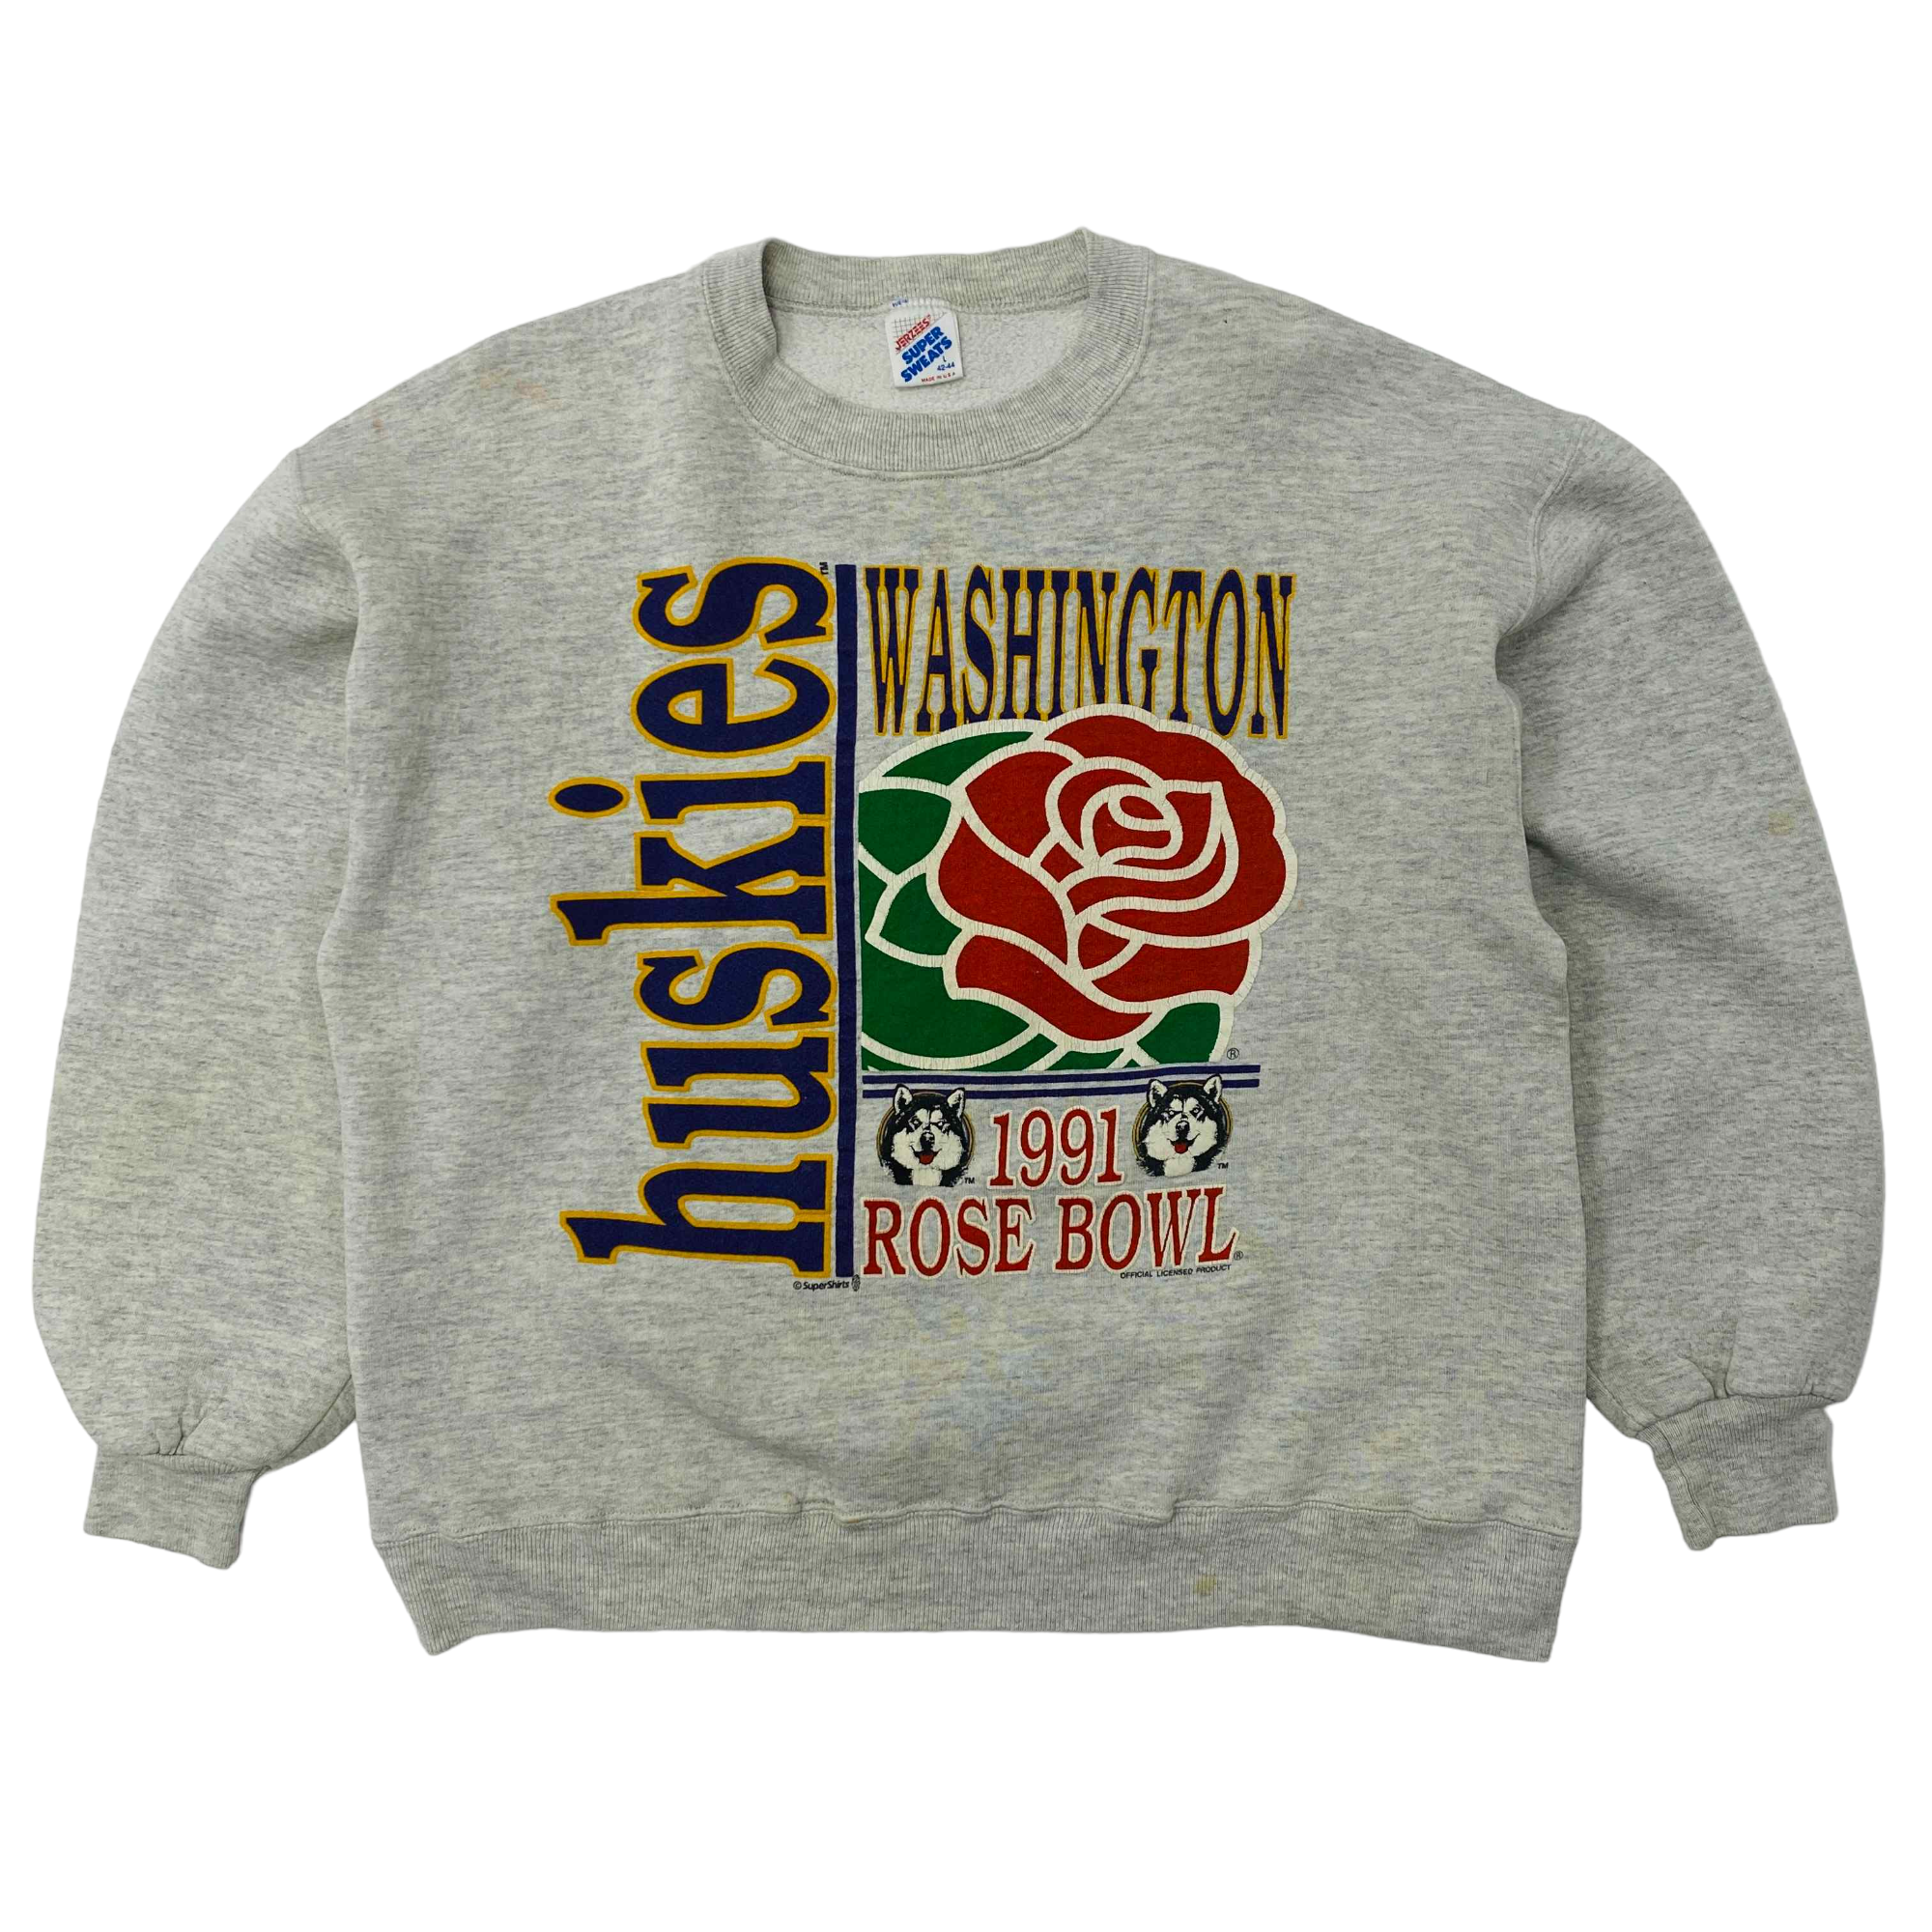 Washington Huskies 1991 Rose Bowl Sweatshirt - Large